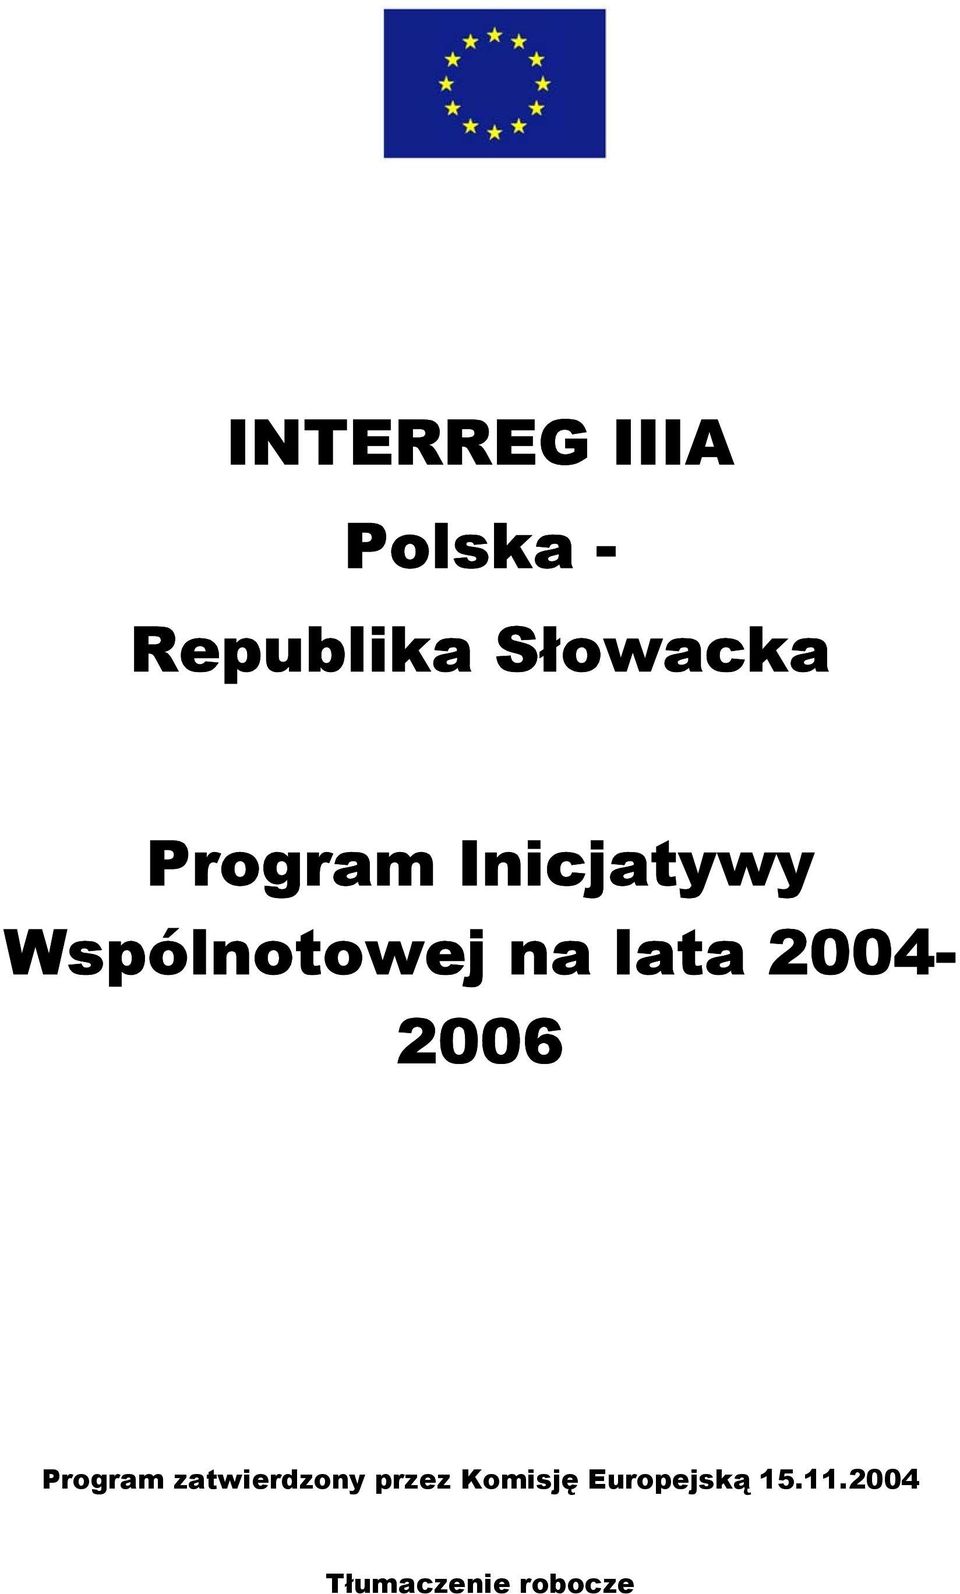 2004-2006 Program zatwierdzony przez